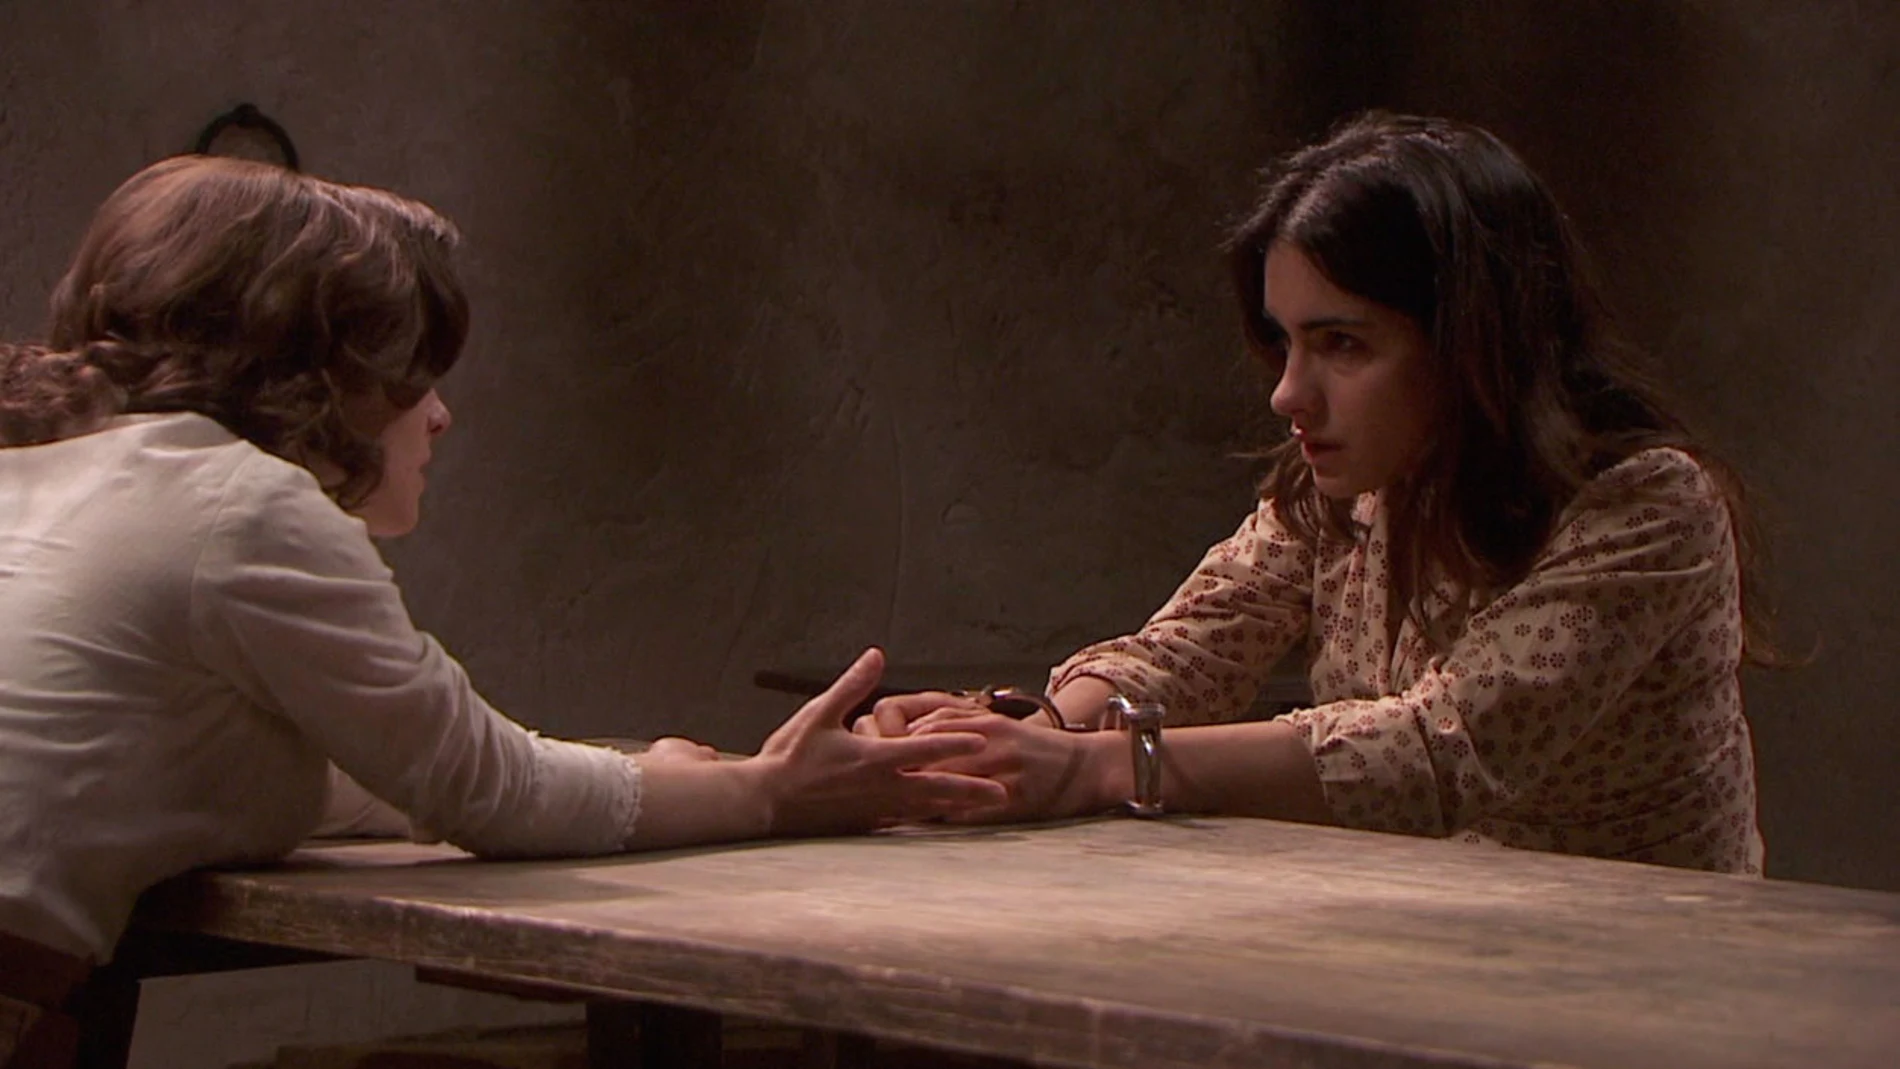 Inés confiesa a Candela que es "una asesina"